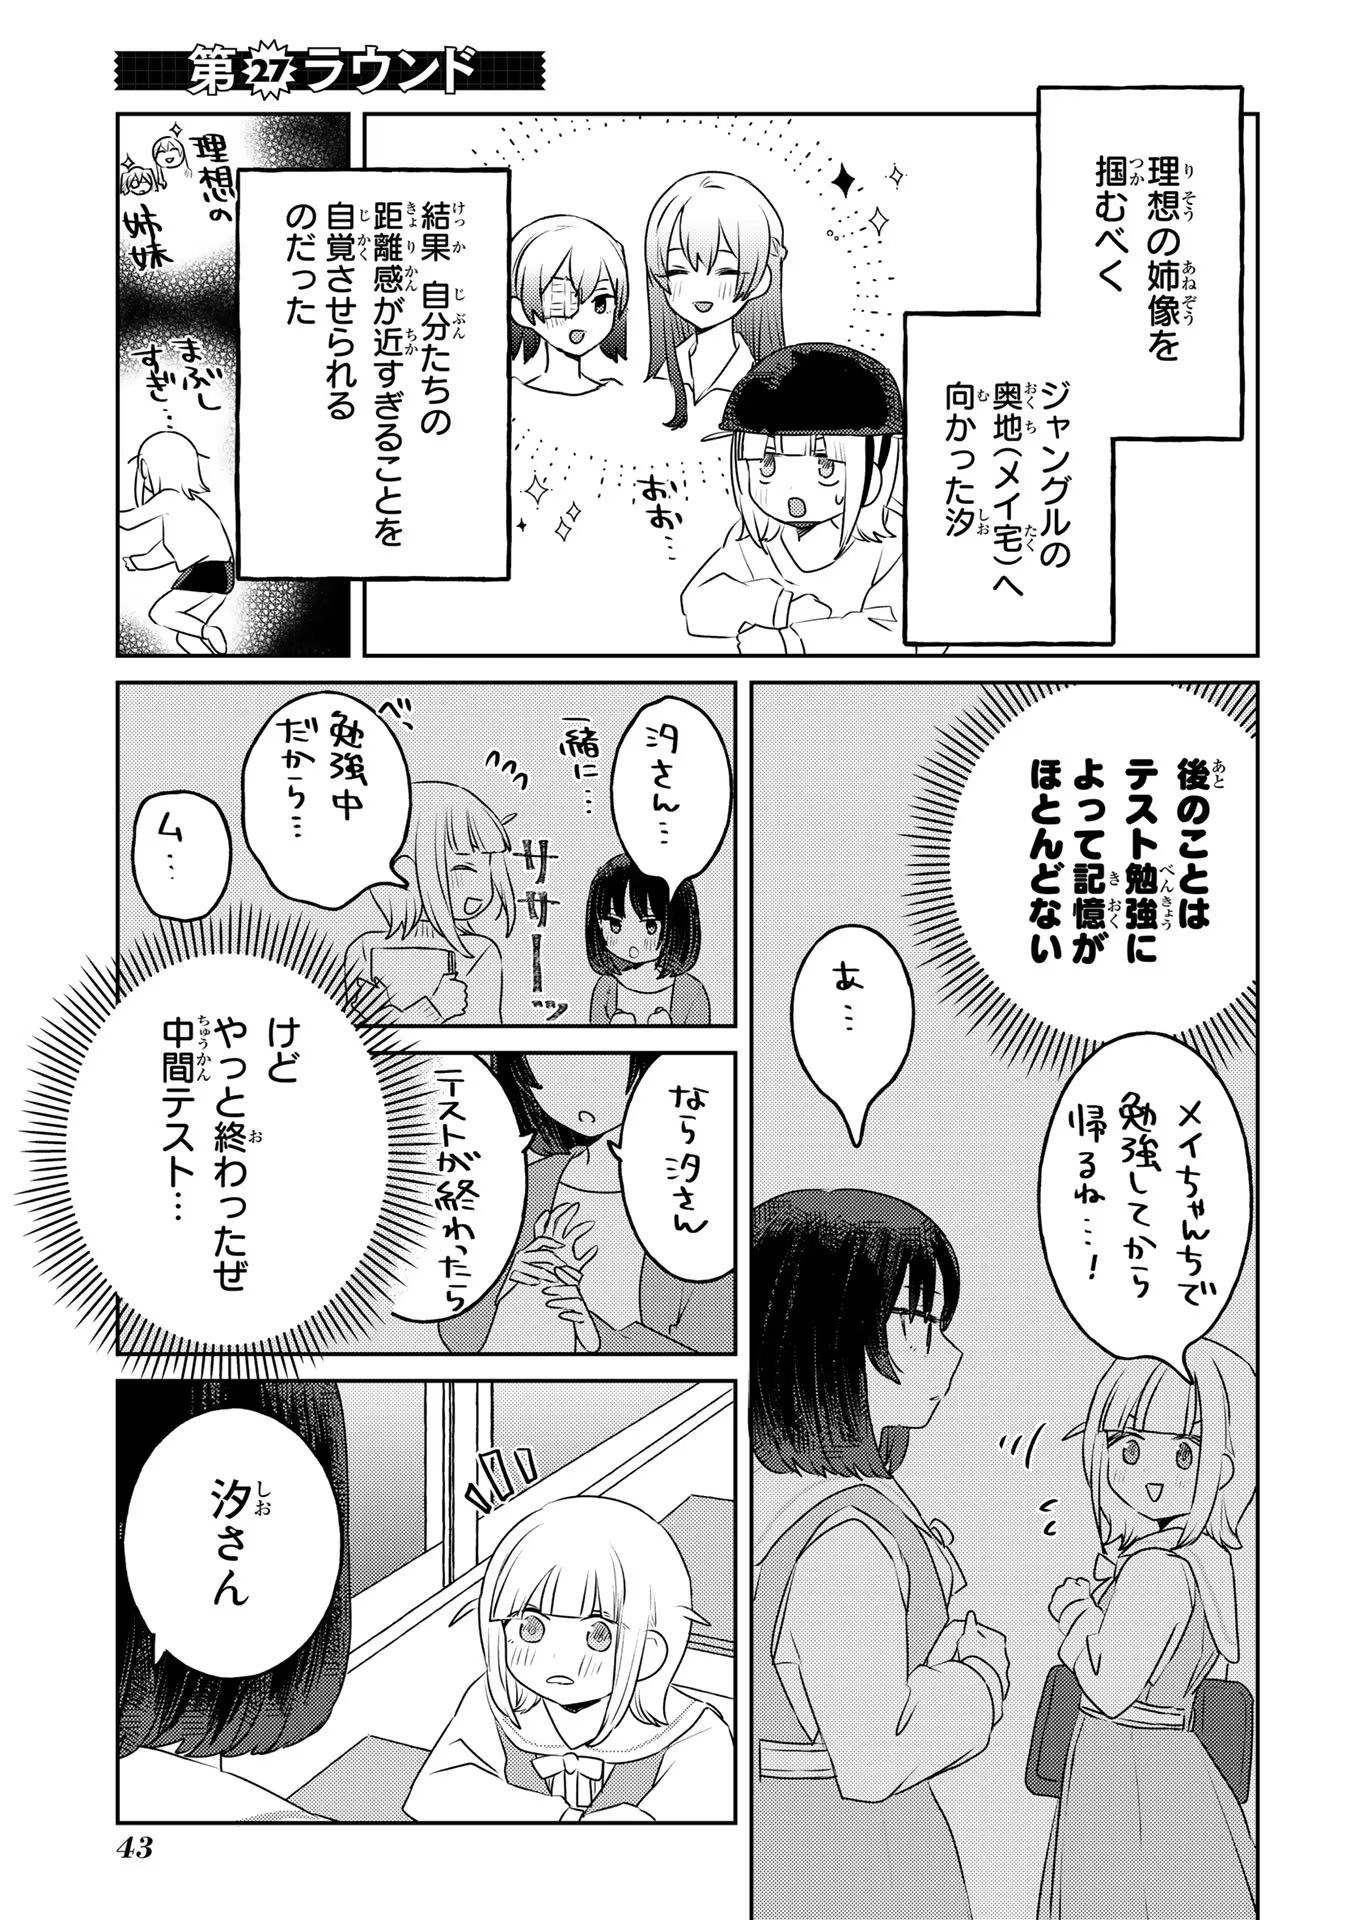 Ane ni Naritai Gishi VS Yuri ni Naritai Gimai - Chapter 27 - Page 1